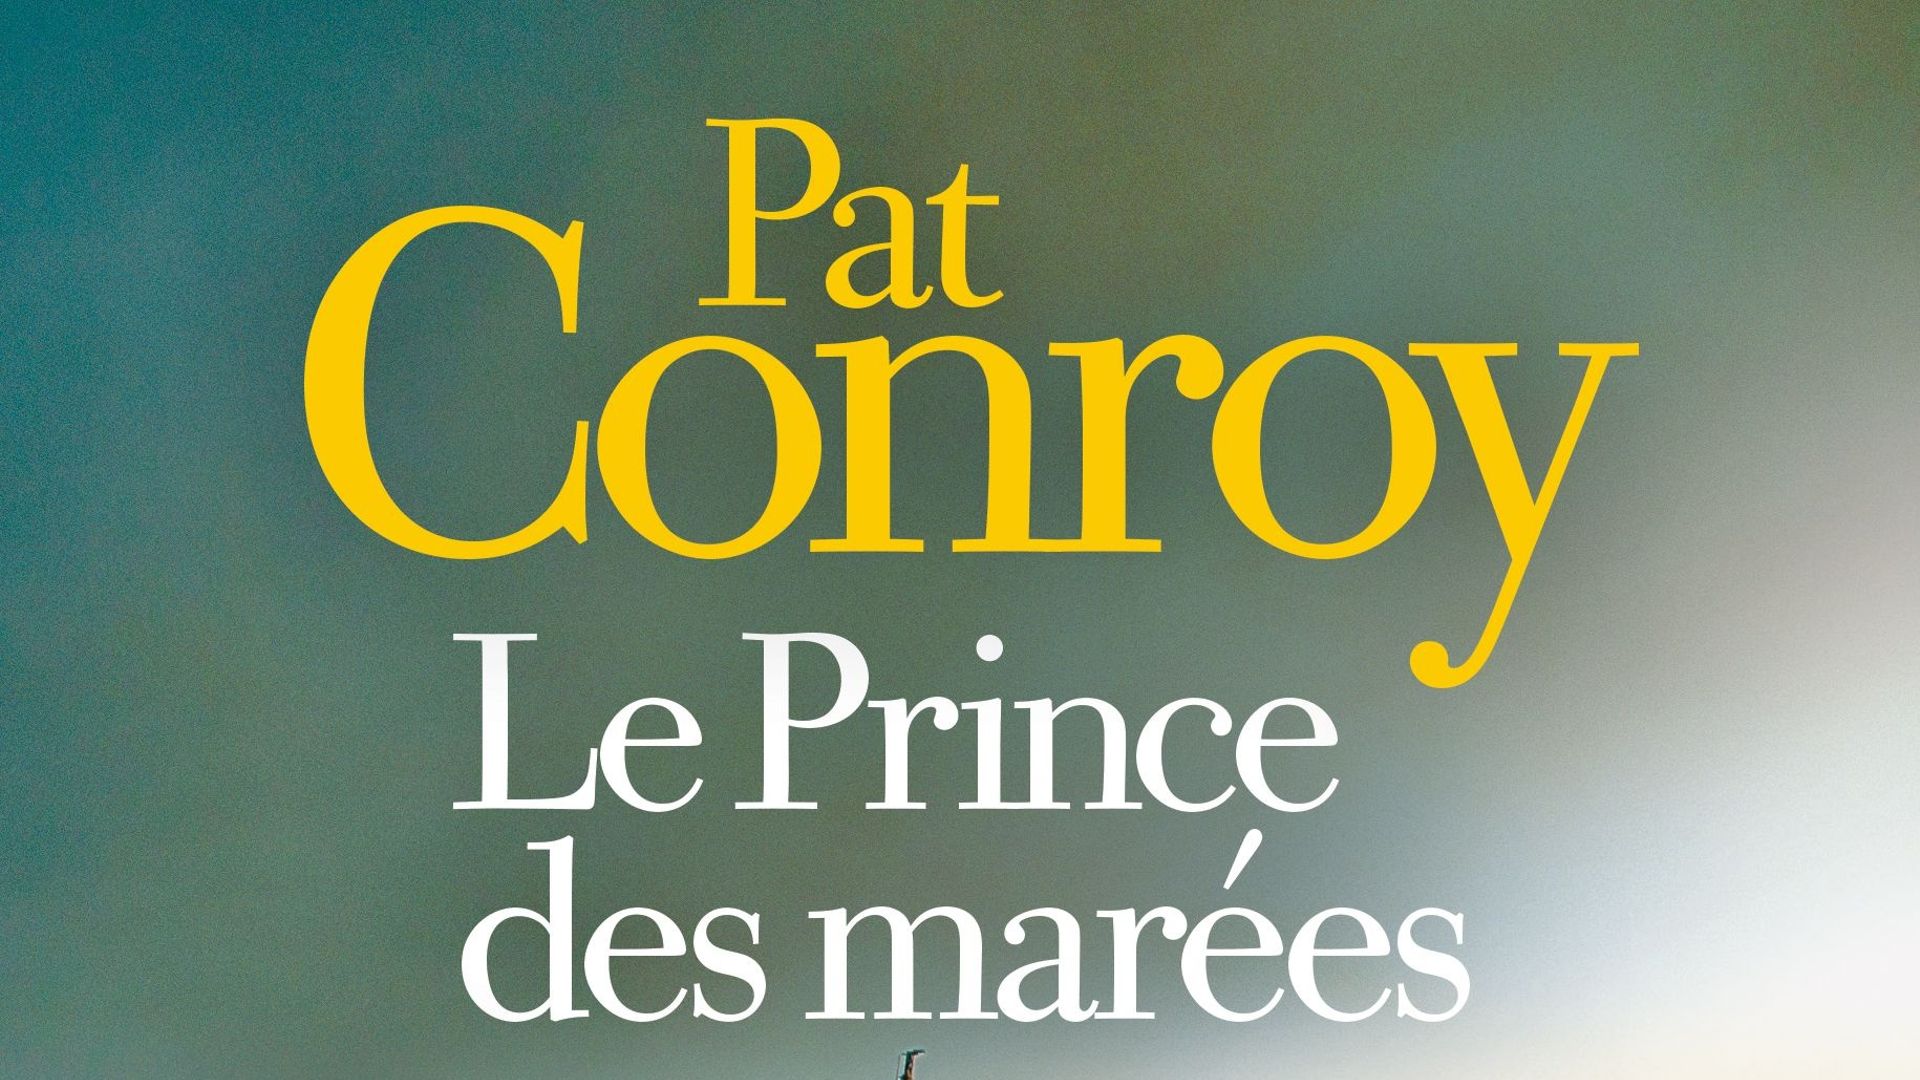 Couverture du livre "Le Prince des marées" de Pat Conroy